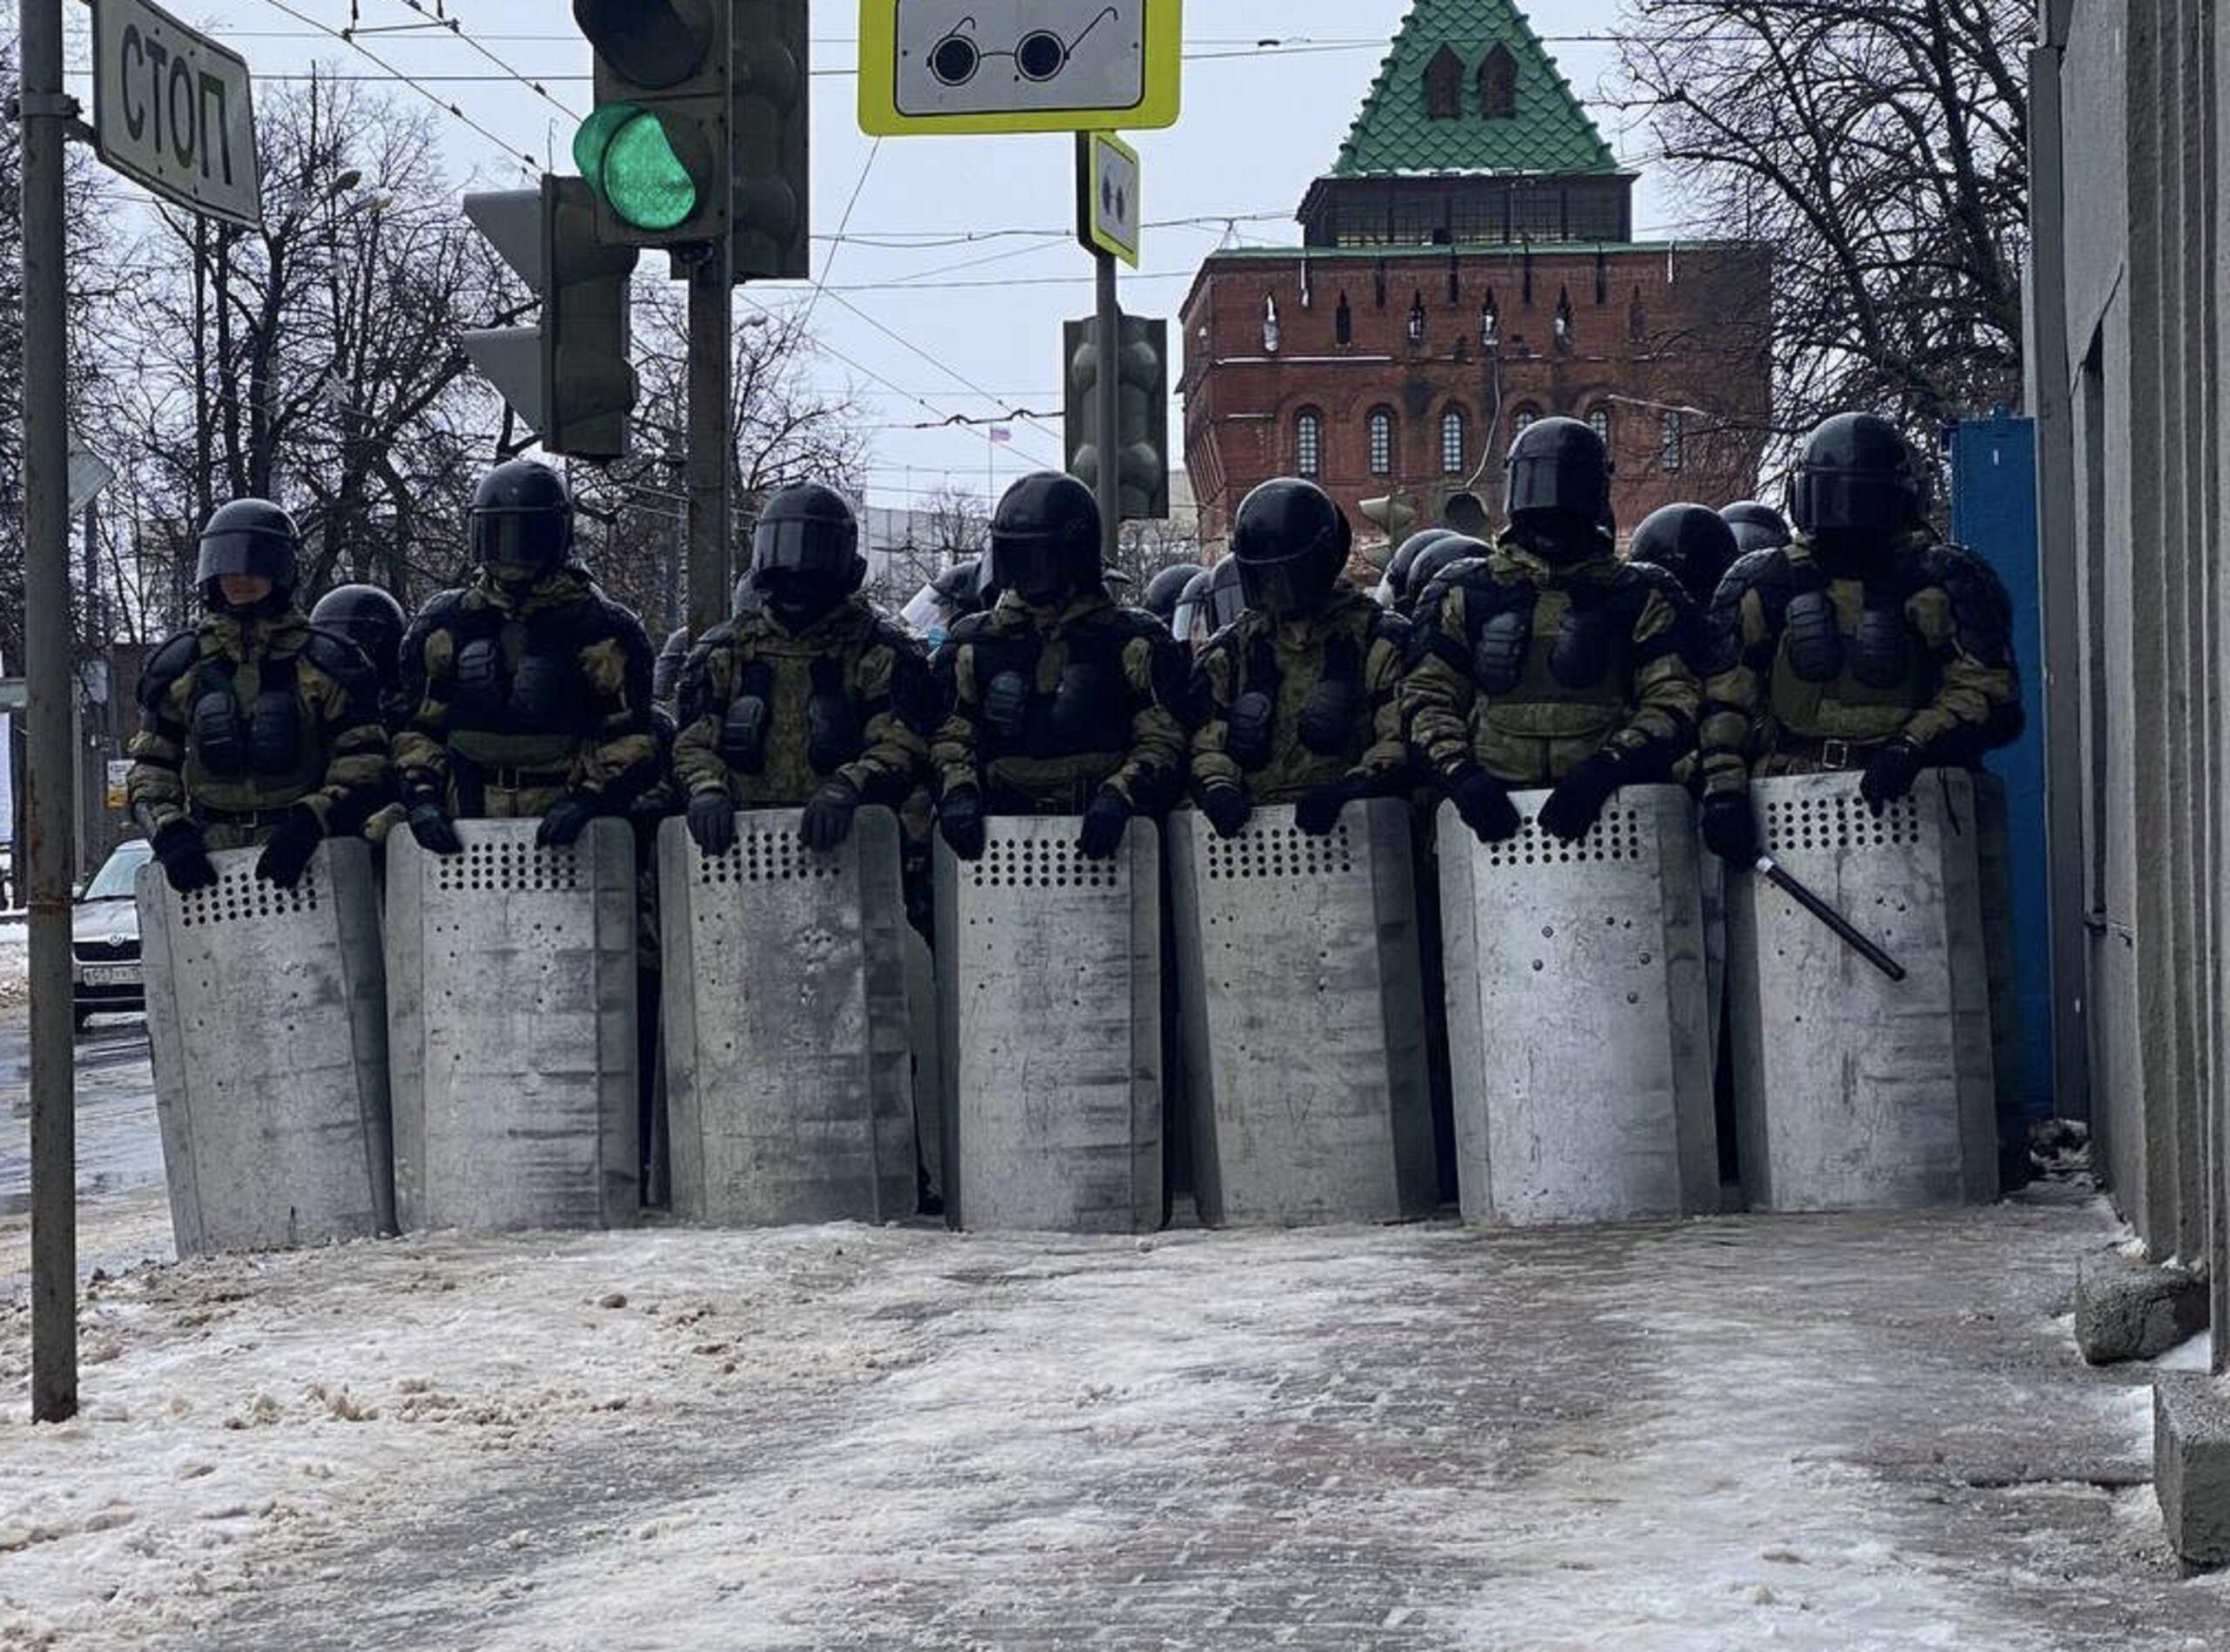 Protesty w Rosji: mur policjantów z tarczami